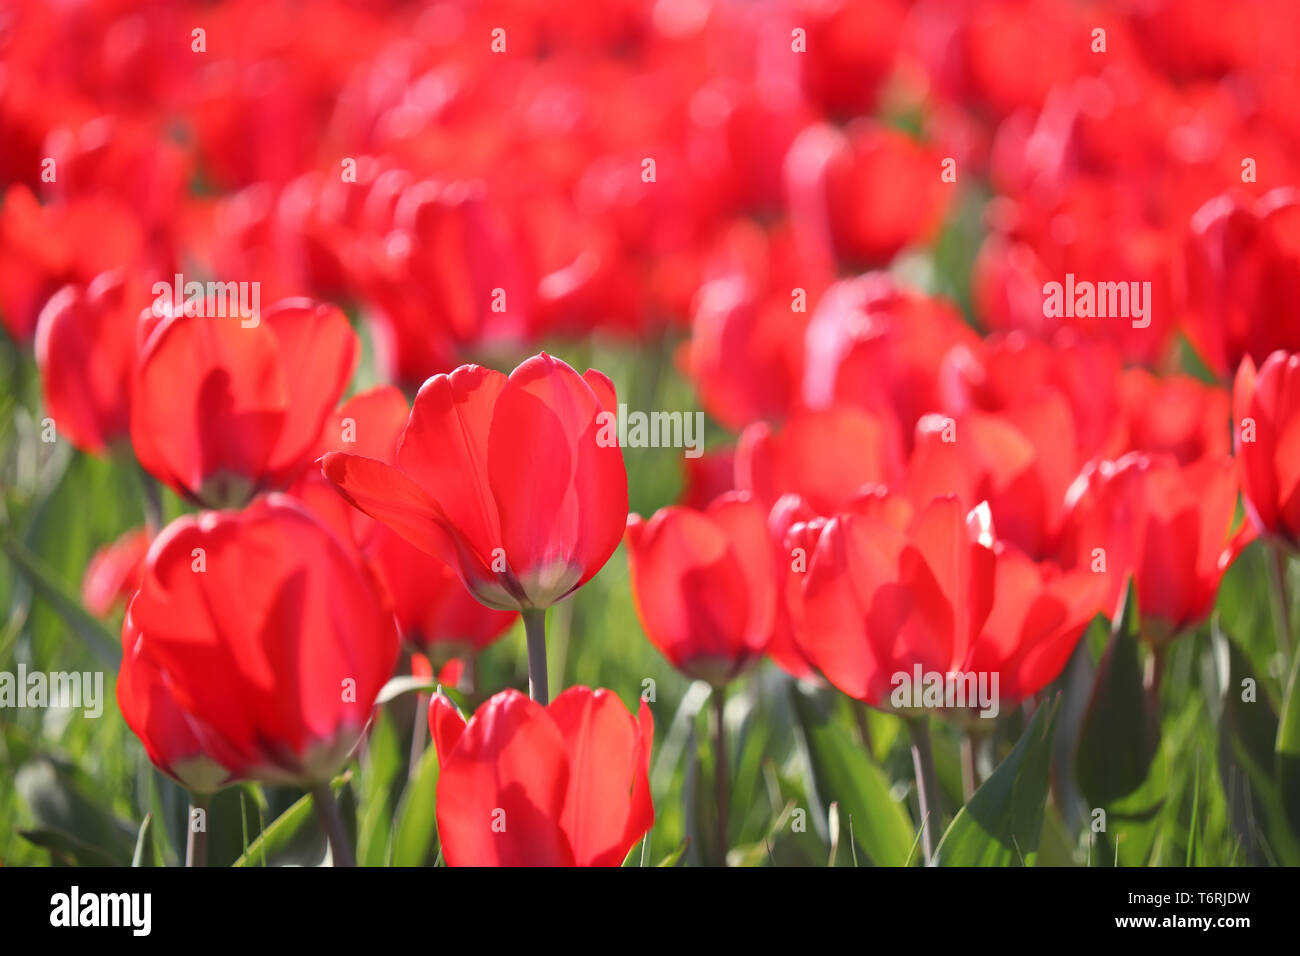 Rote Tulpe Blumen, bunten Frühling Hintergrund. Bereich der blühenden Tulpen im sonnigen Tag, selektiver Fokus Stockfoto